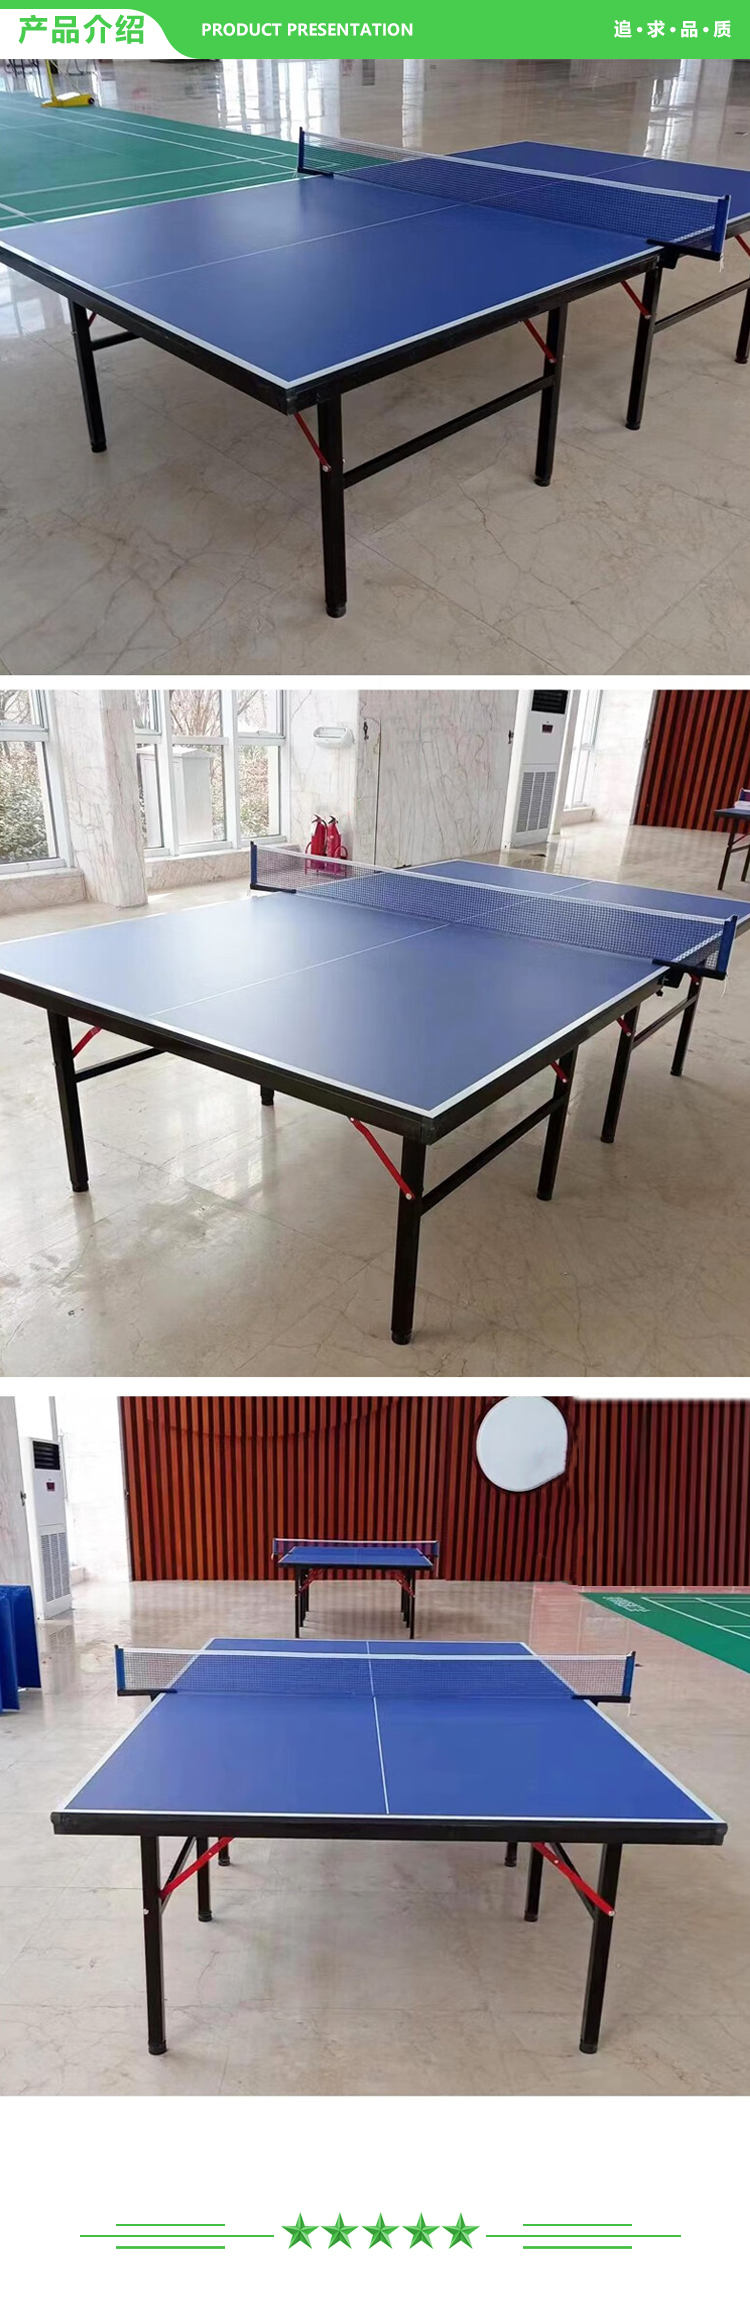 益动未来 YD-pt01 乒乓球台 标准比赛训练室内可折叠式乒乓球桌 2.jpg